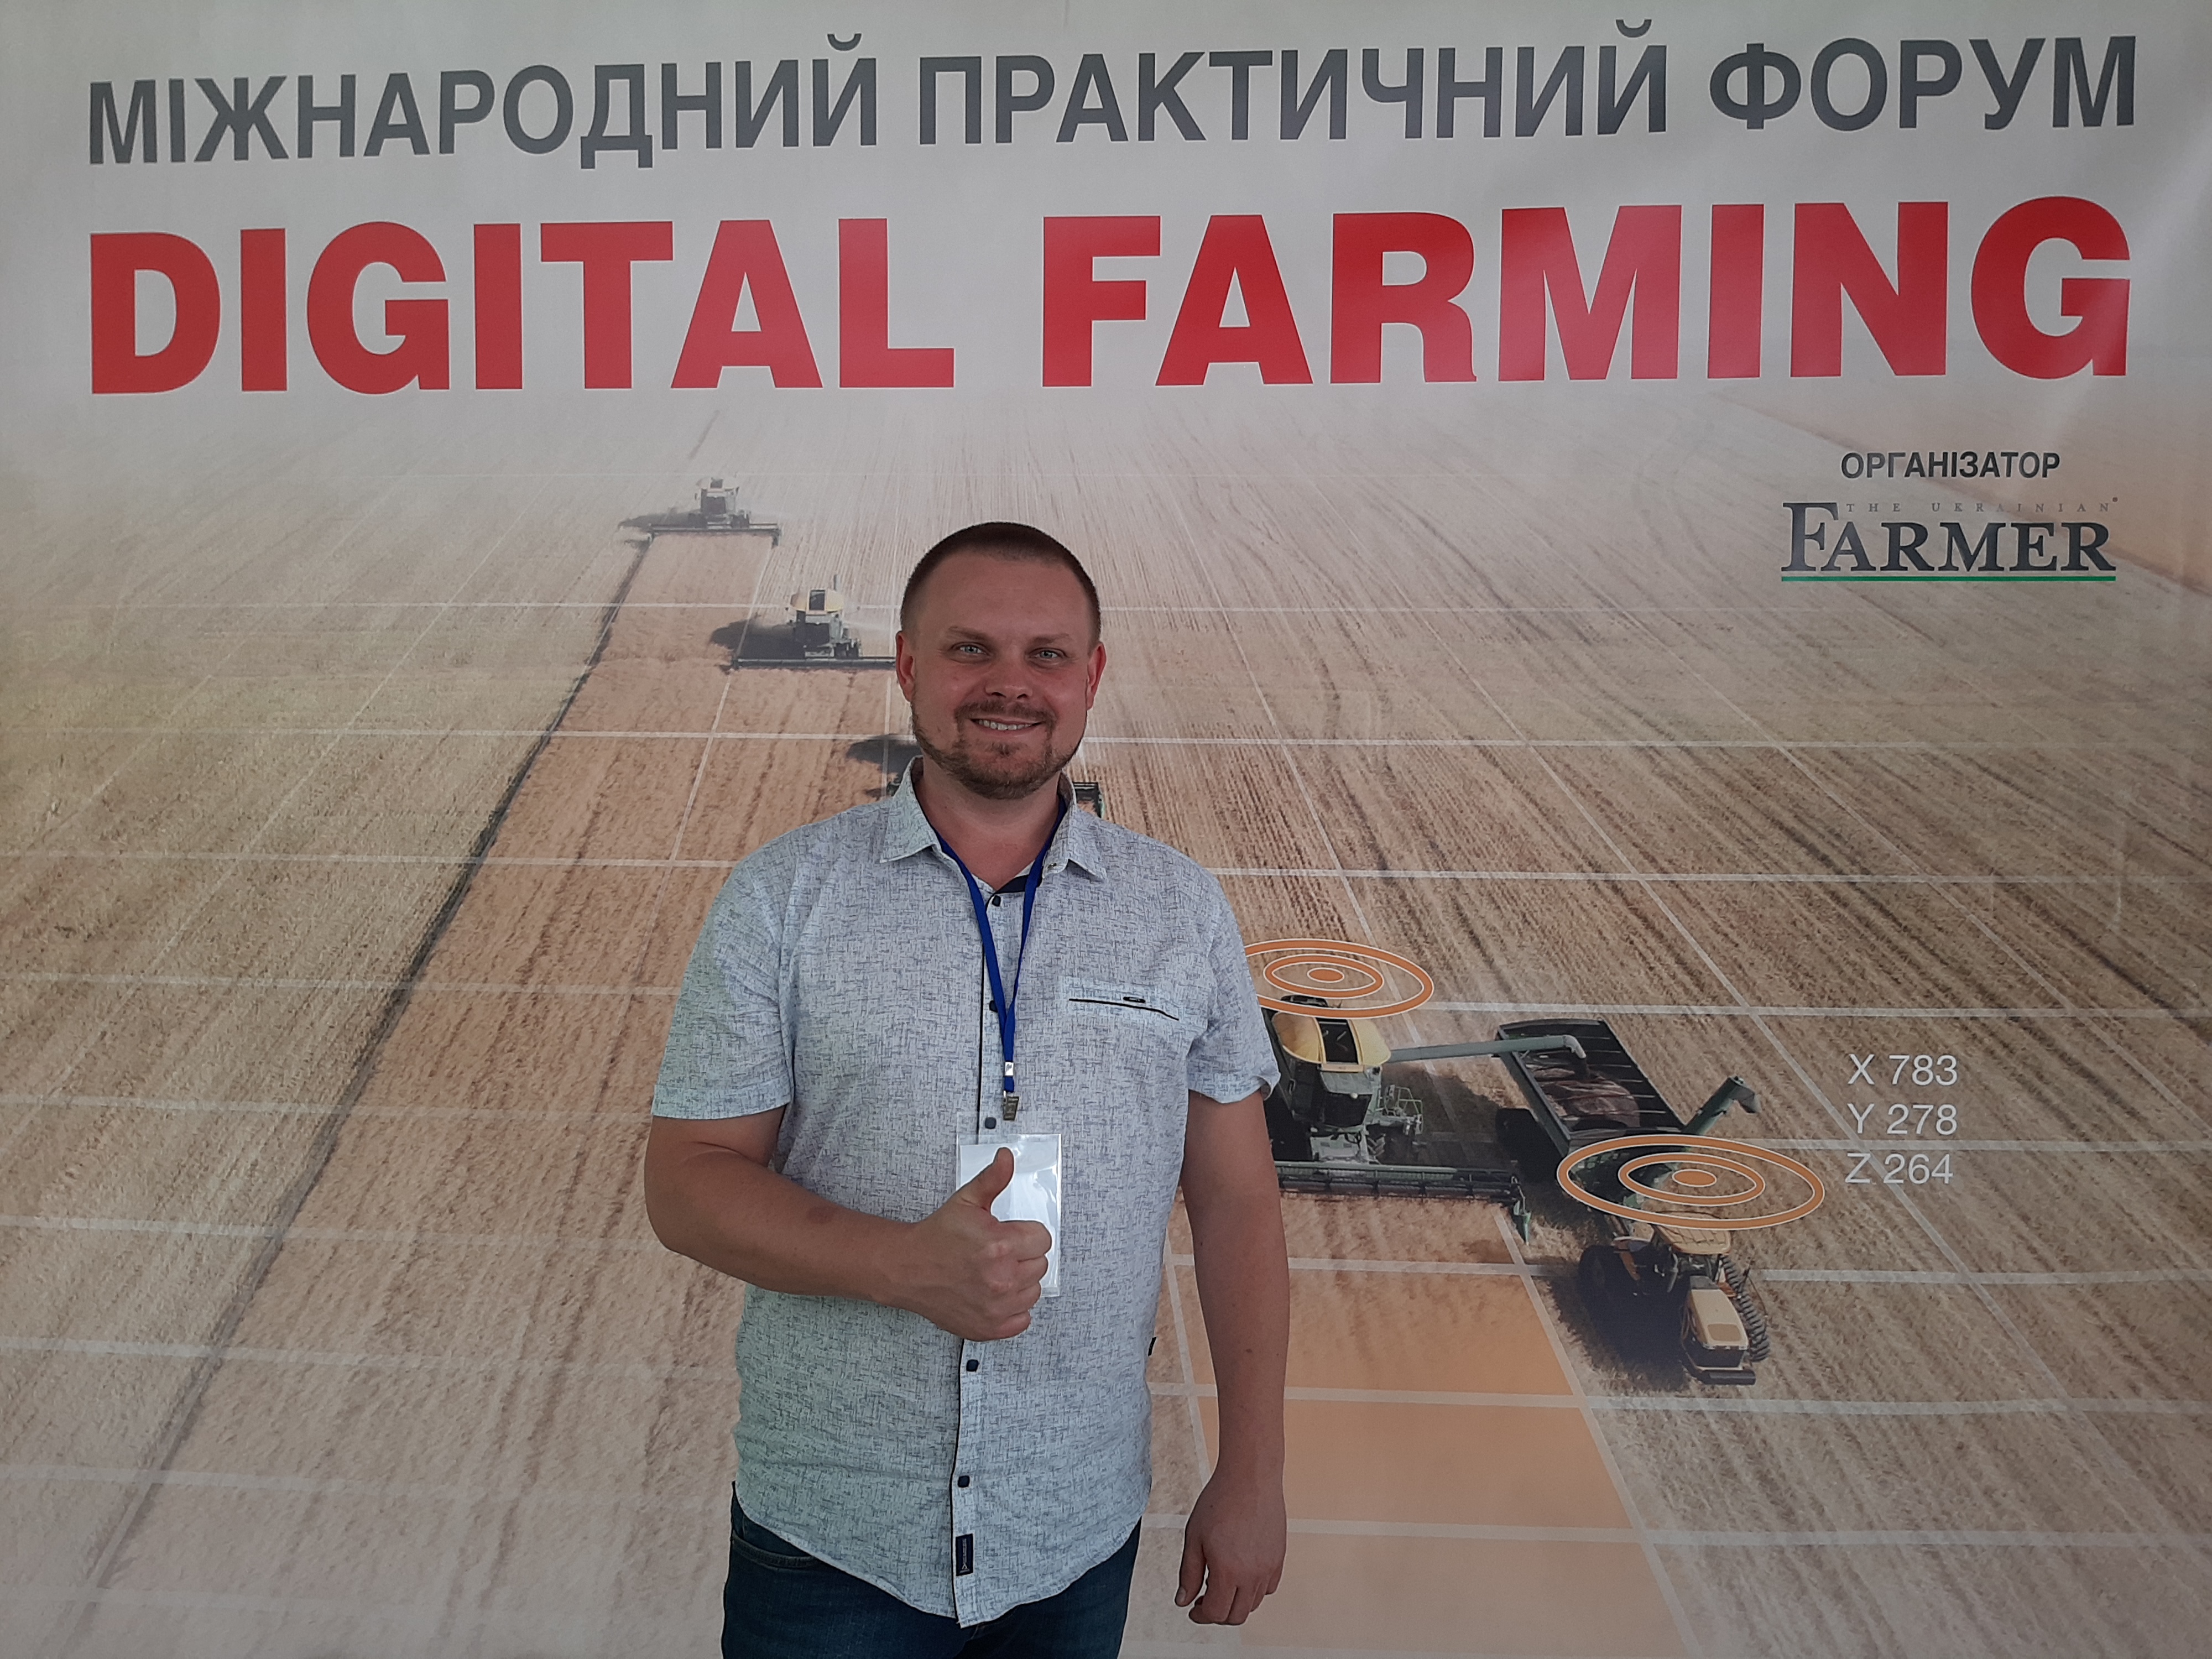 Карти посіву та врожайності на Digital Farming